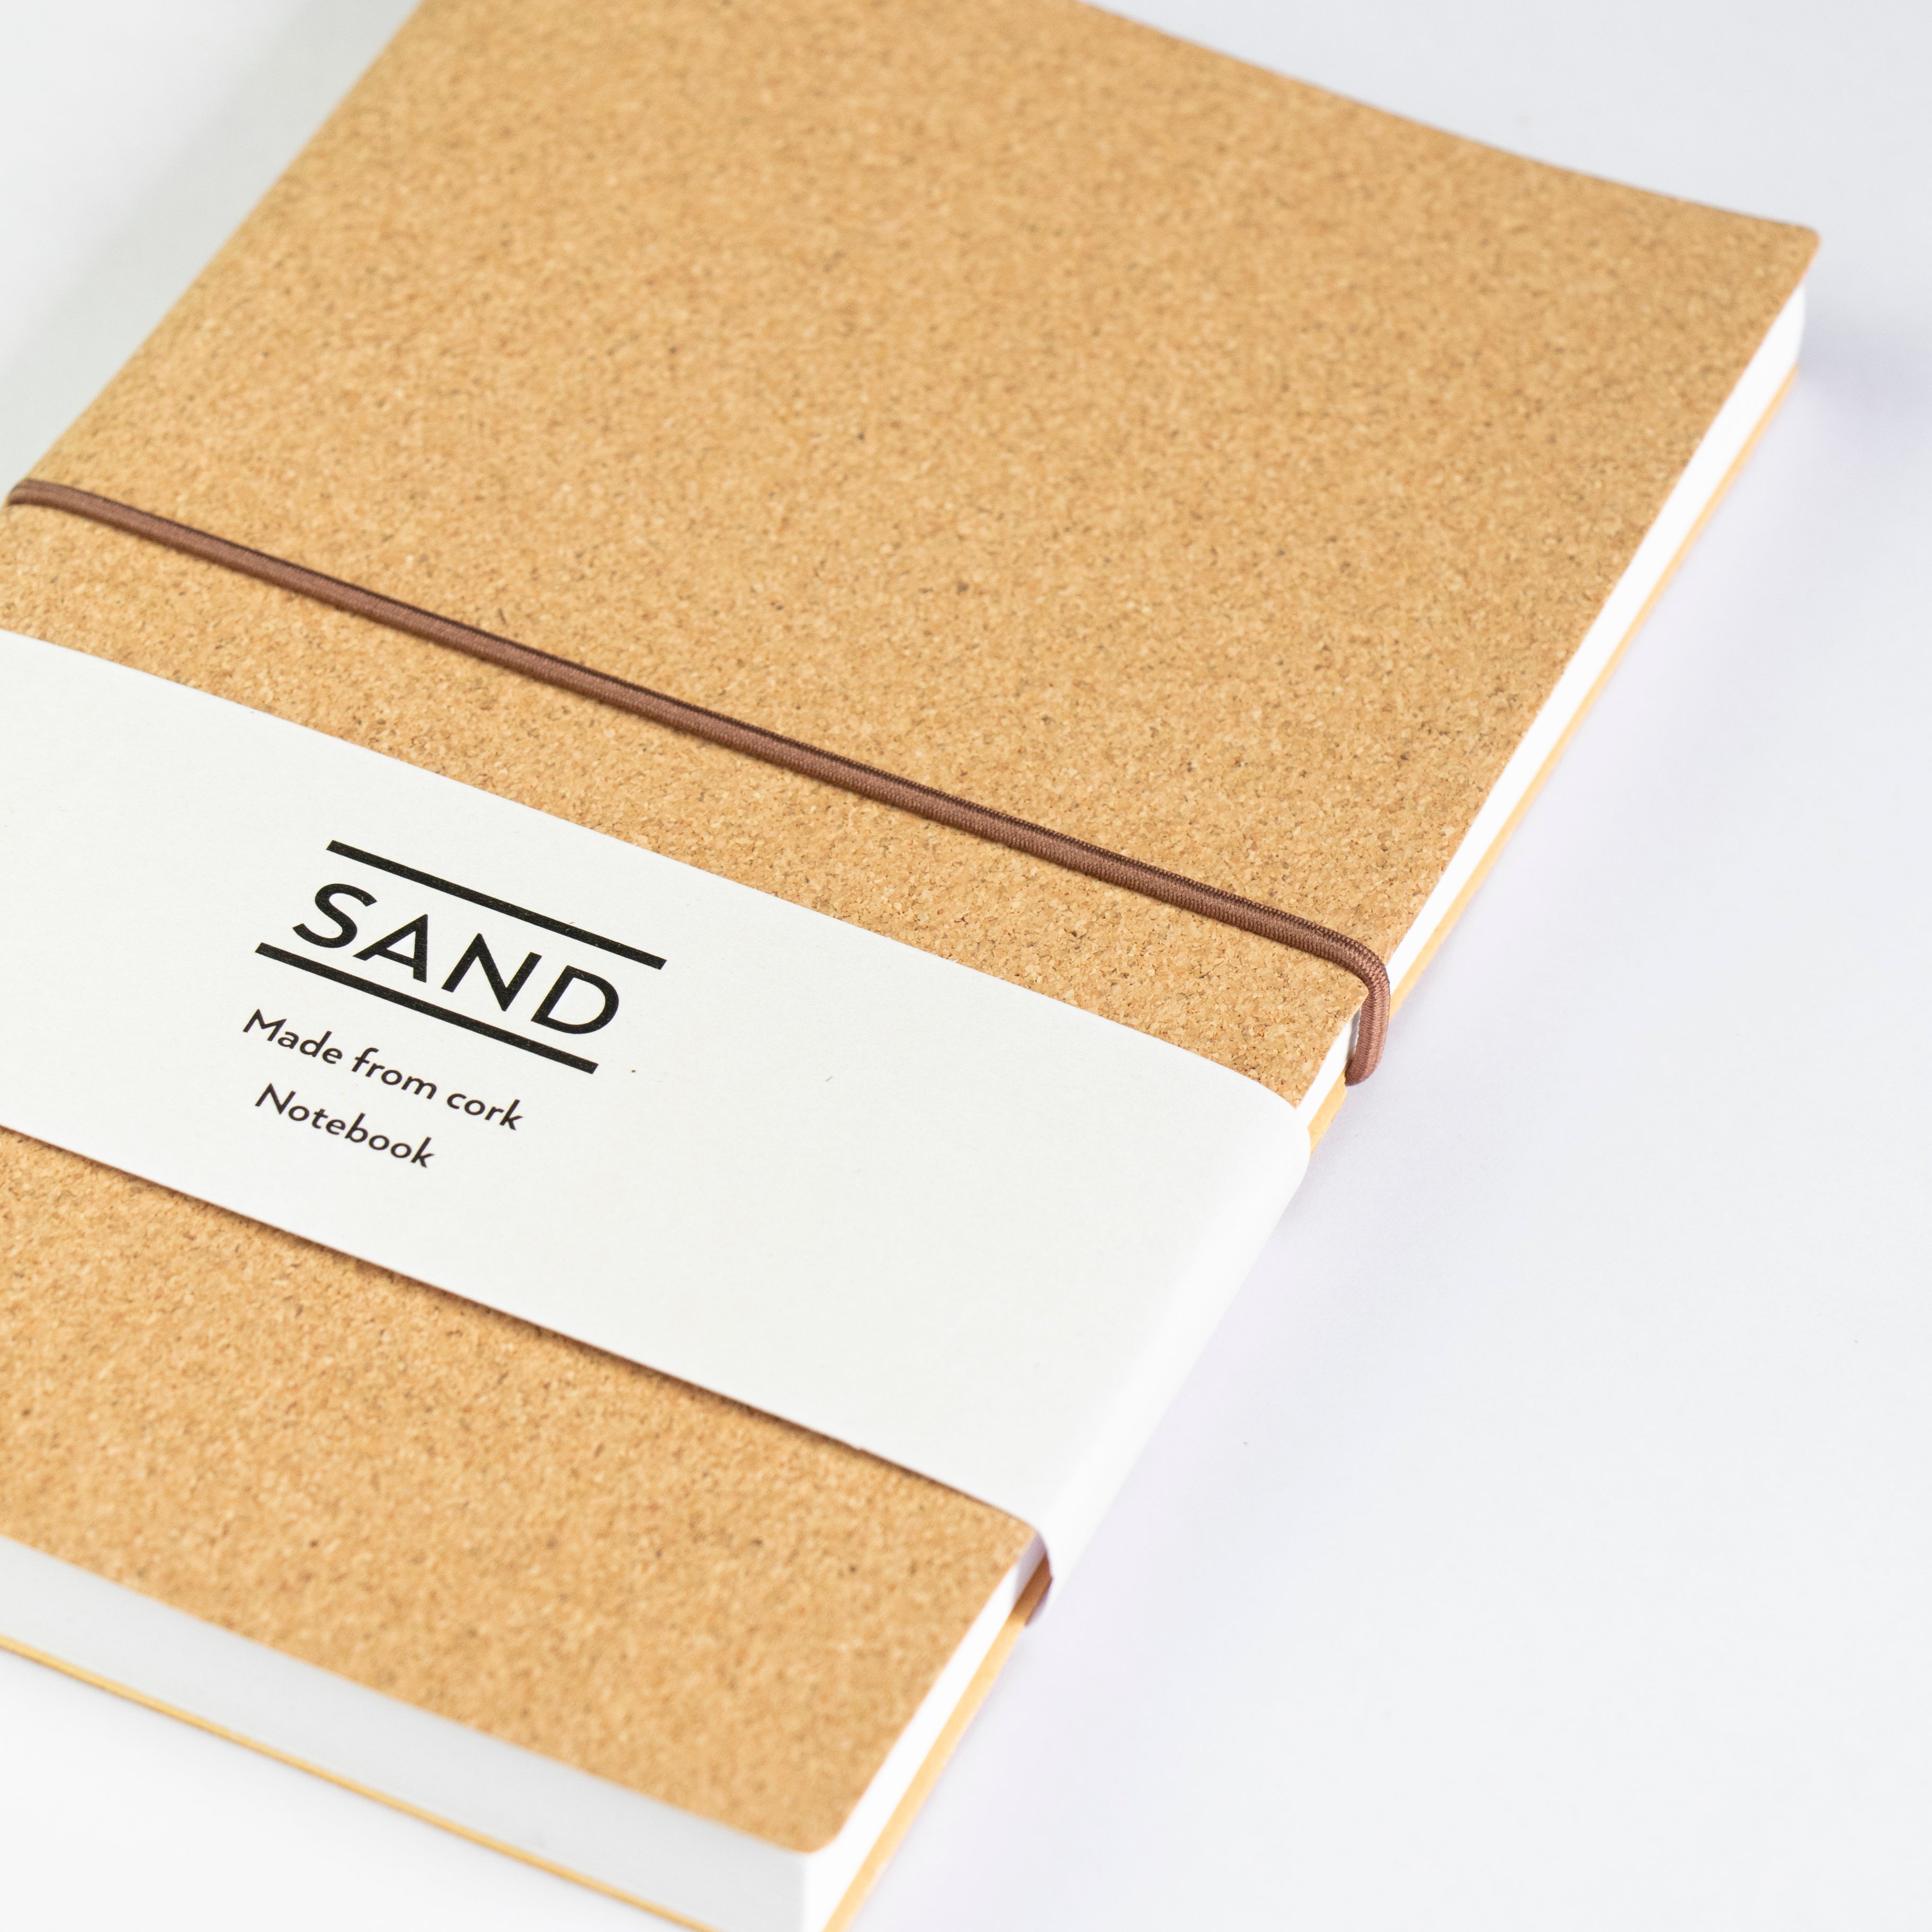 Sand A5 Notebook